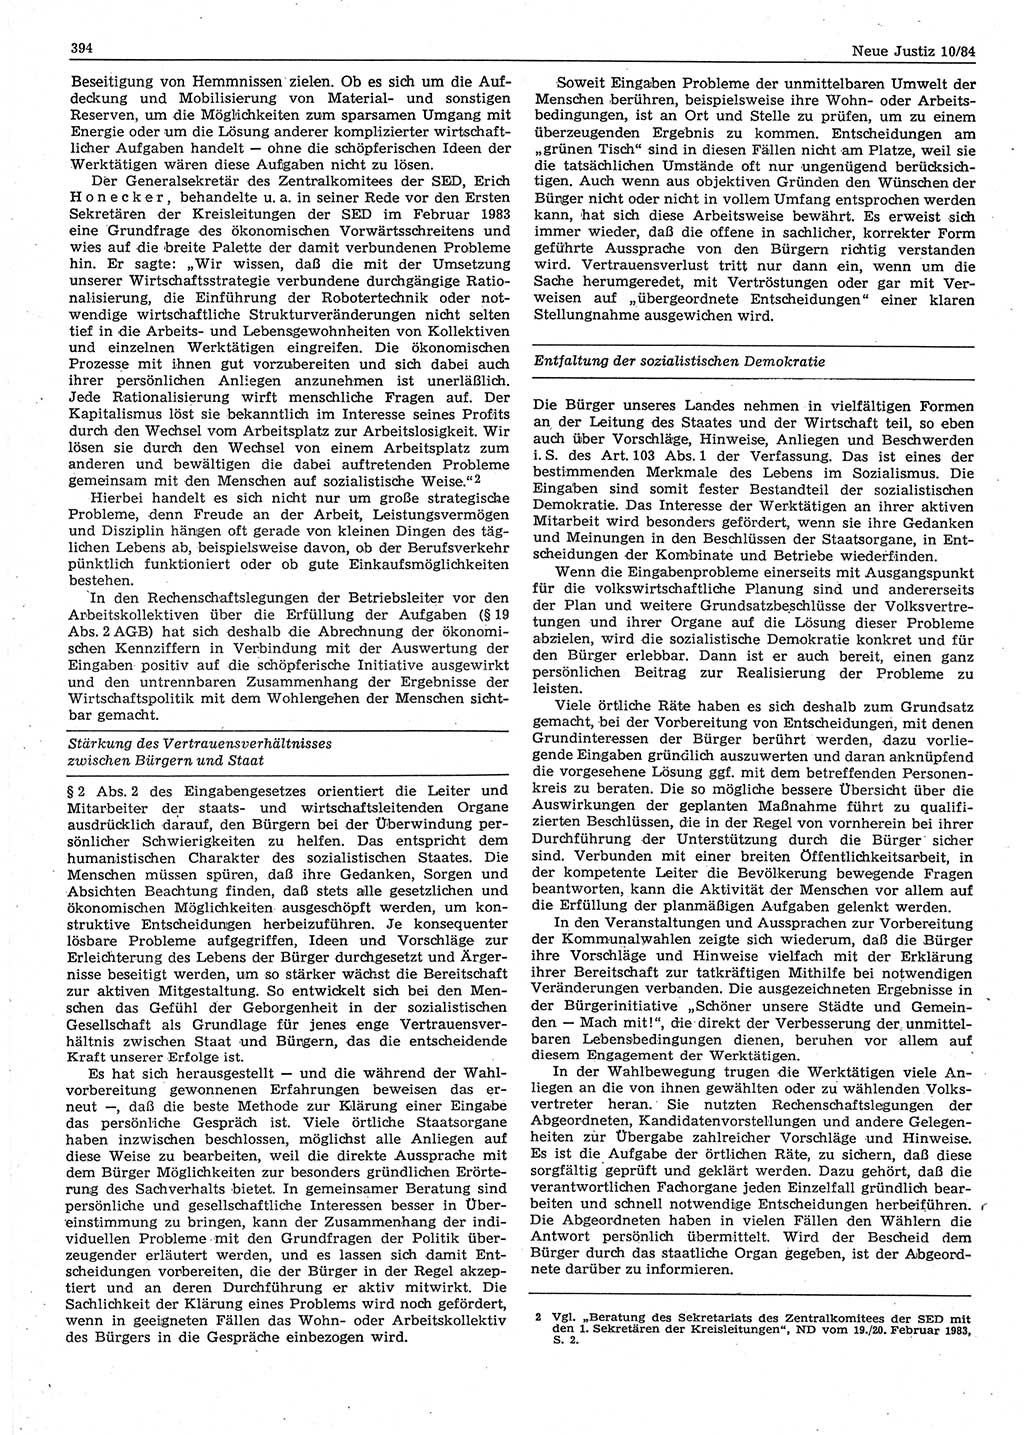 Neue Justiz (NJ), Zeitschrift für sozialistisches Recht und Gesetzlichkeit [Deutsche Demokratische Republik (DDR)], 38. Jahrgang 1984, Seite 394 (NJ DDR 1984, S. 394)